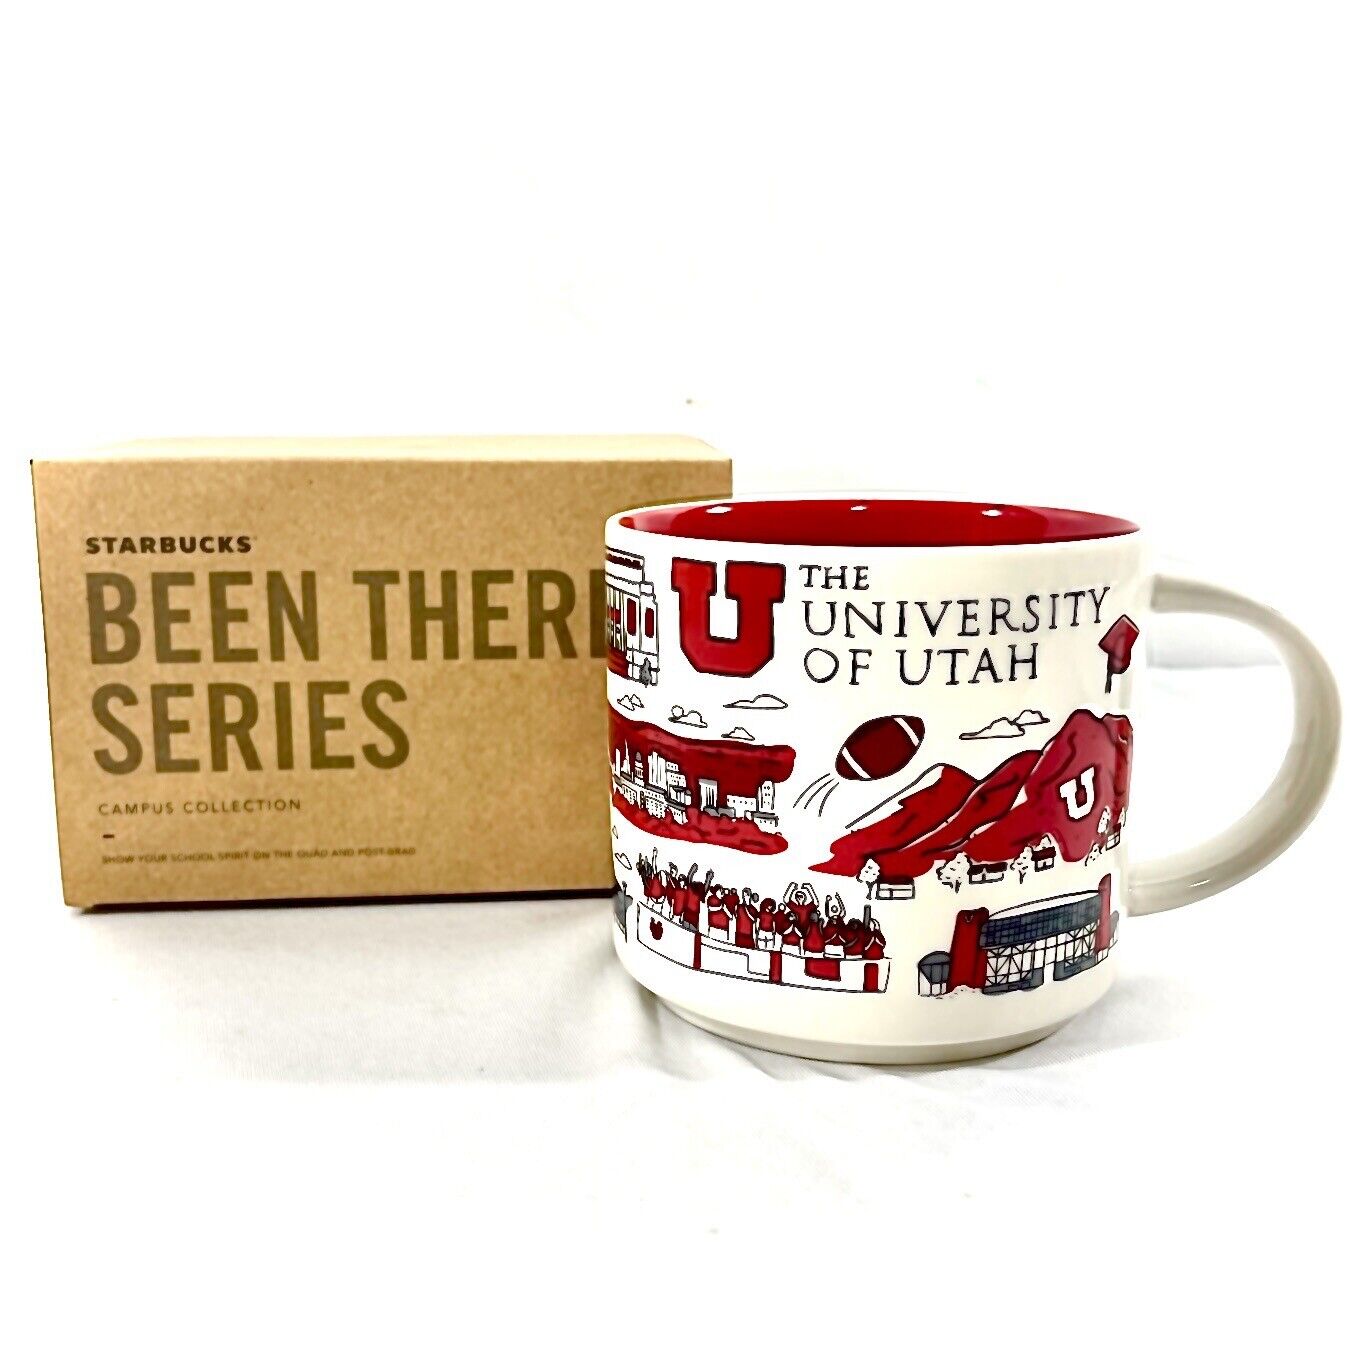 New University of Utah Starbucks Been There Series Coffee Mug Utes UofU Football